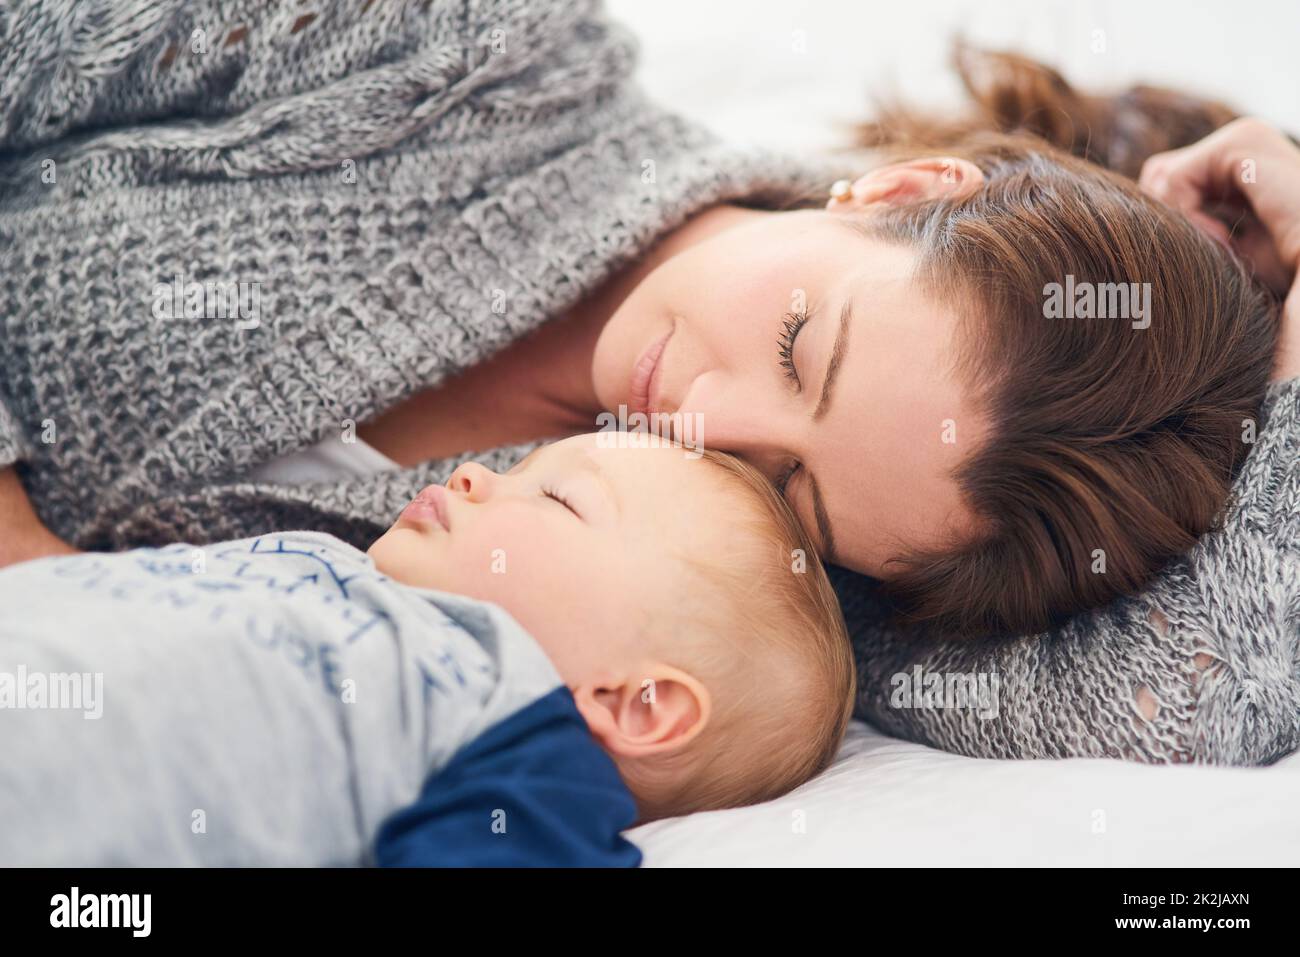 Eine kurze Schlummerfunktion. Eine kurze Aufnahme einer Mutter und ihres Jungen, die zu Hause zusammen schlafen. Stockfoto